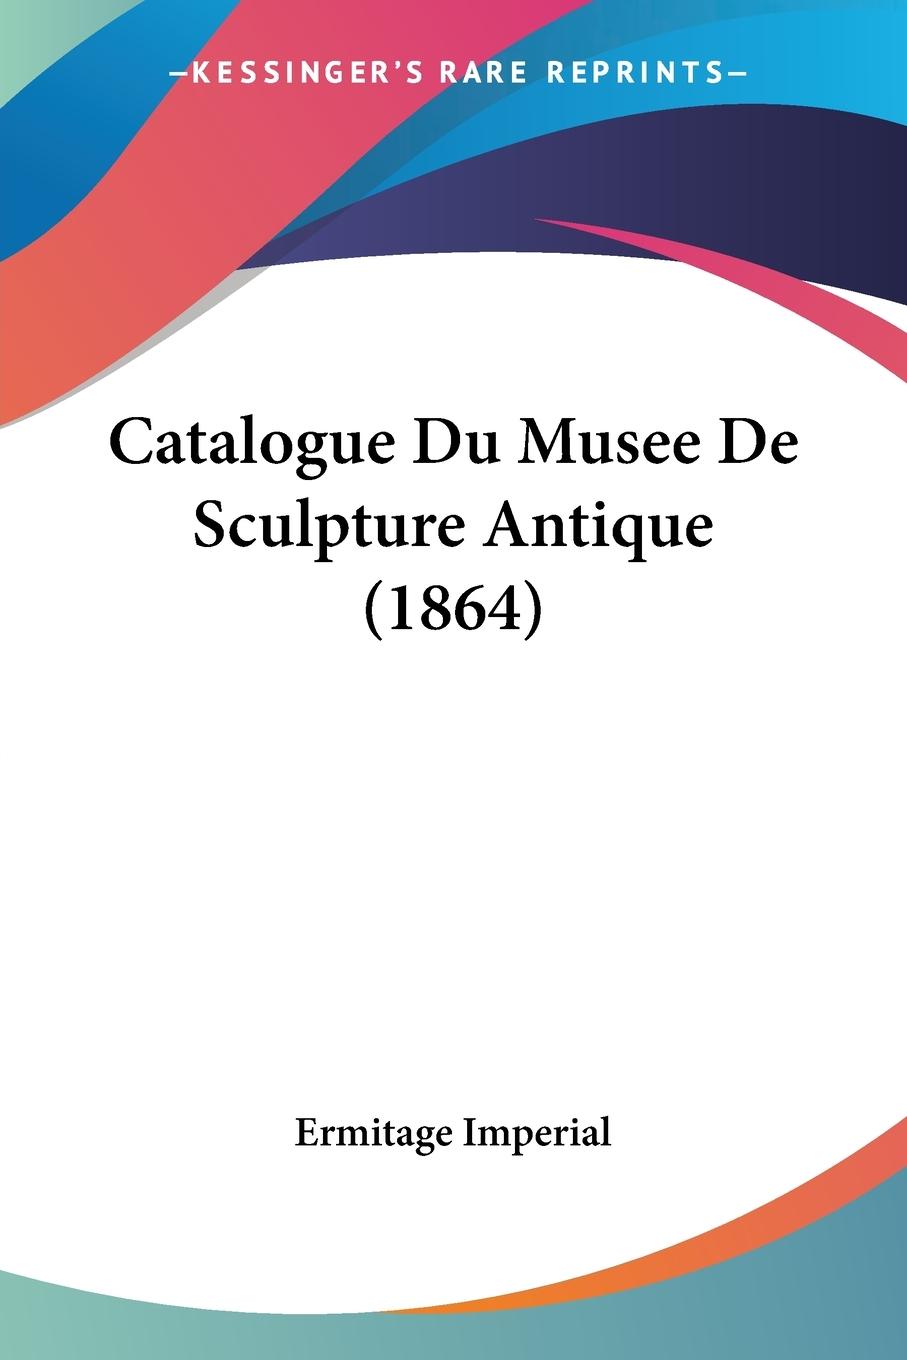 Catalogue Du Musee De Sculpture Antique (1864) - Ermitage Imperial